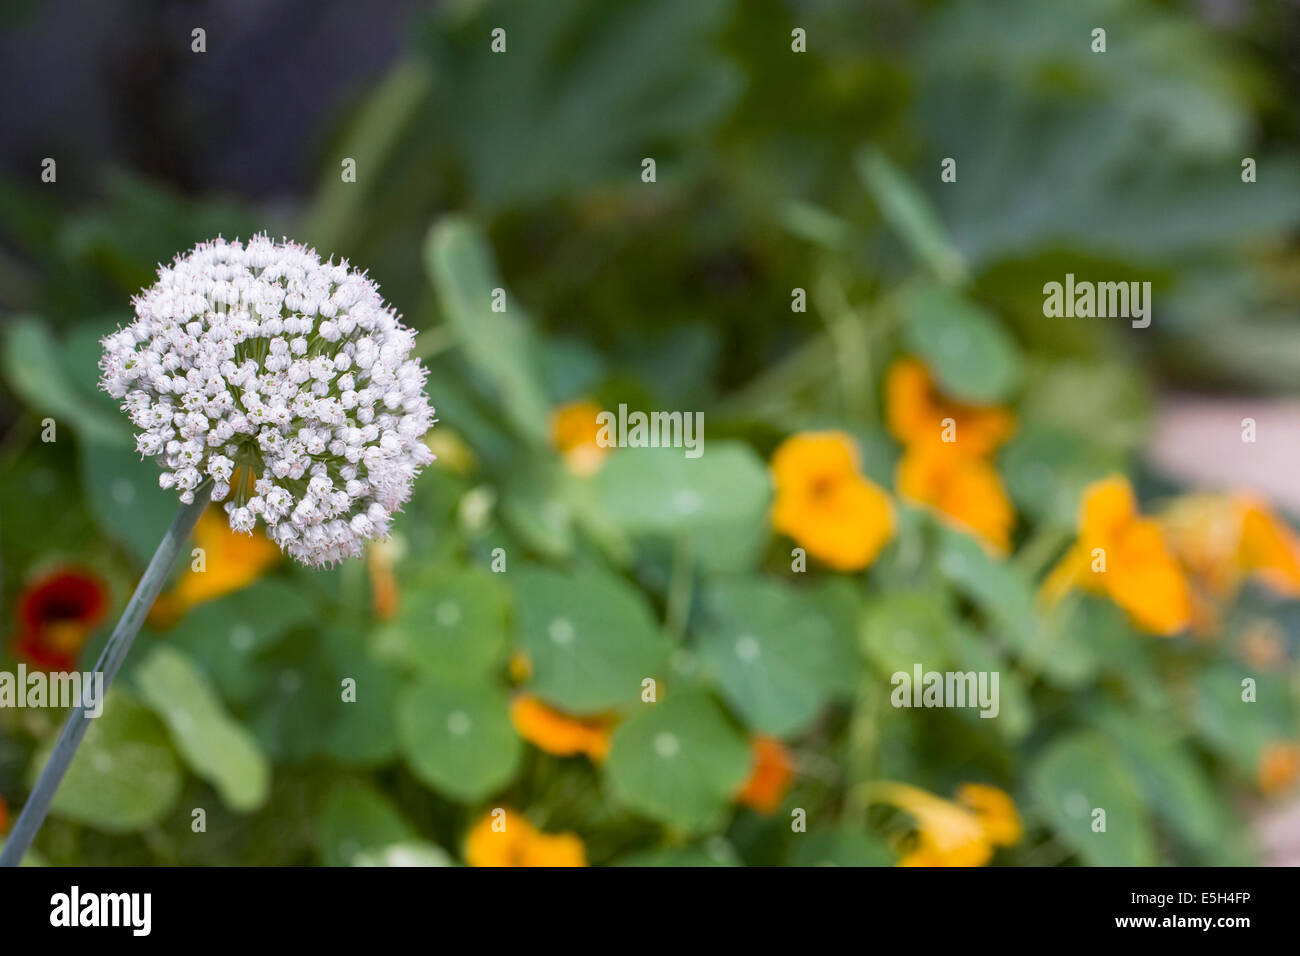 Allium cepa flowering against a background of nasturtium flowers. Stock Photo